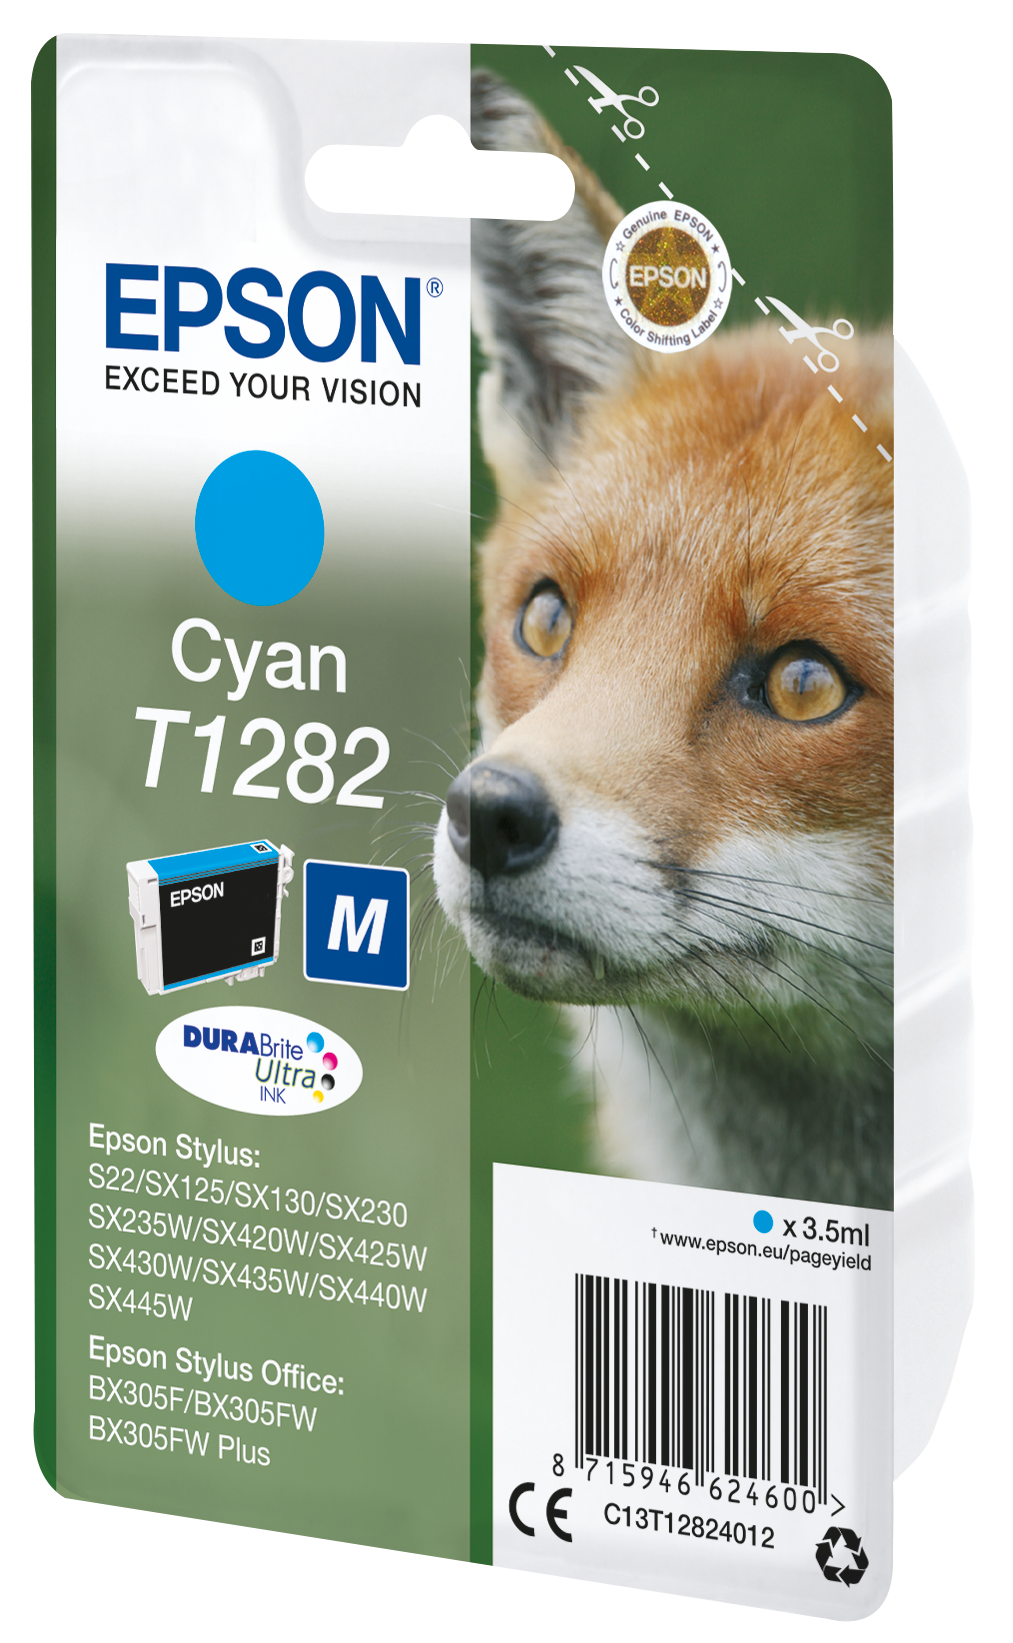 Epson T1272 - Cyan  Meilleur rapport qualité prix!